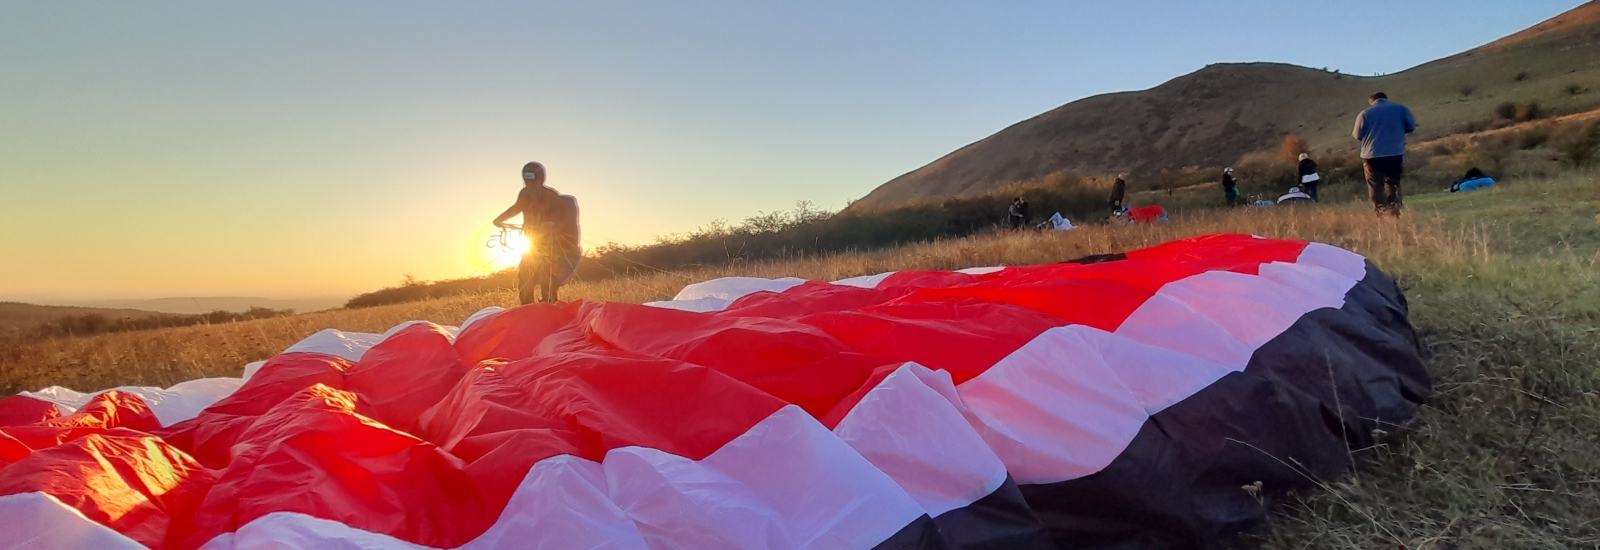 ParaFly Service - škola létání, paragliding, paramotory, padáky, tandem, létání s instuktorem 